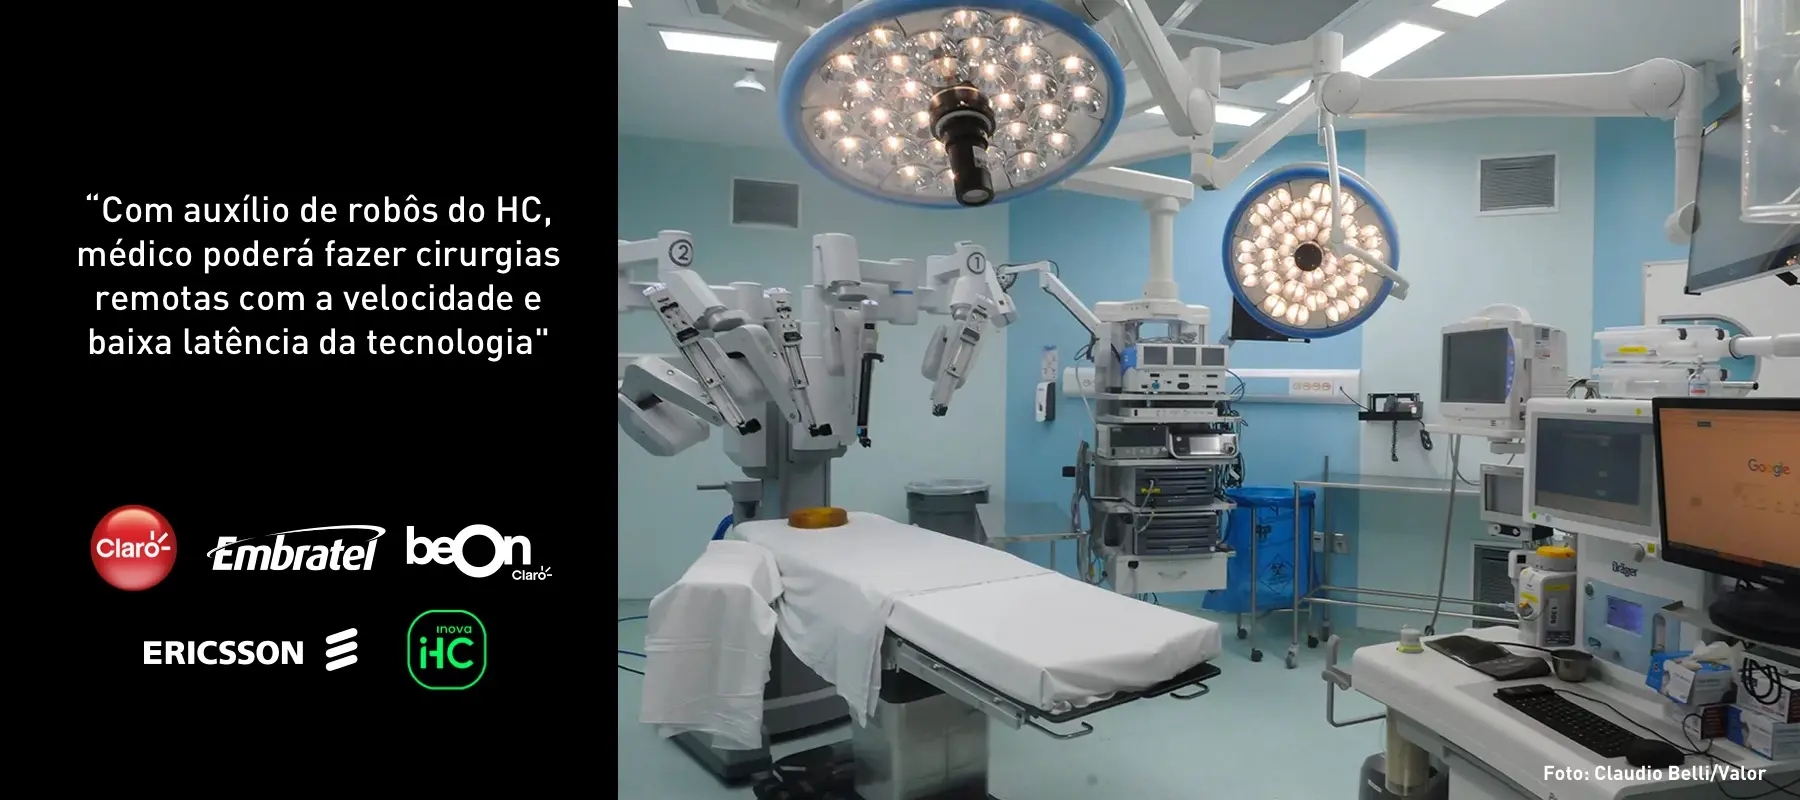 com auxilio de robôs do HC, médico poderá fazer cirurgias remotas com a velocidade e baixa latência da tecnologia - Foto: Claudio Belli/Valor